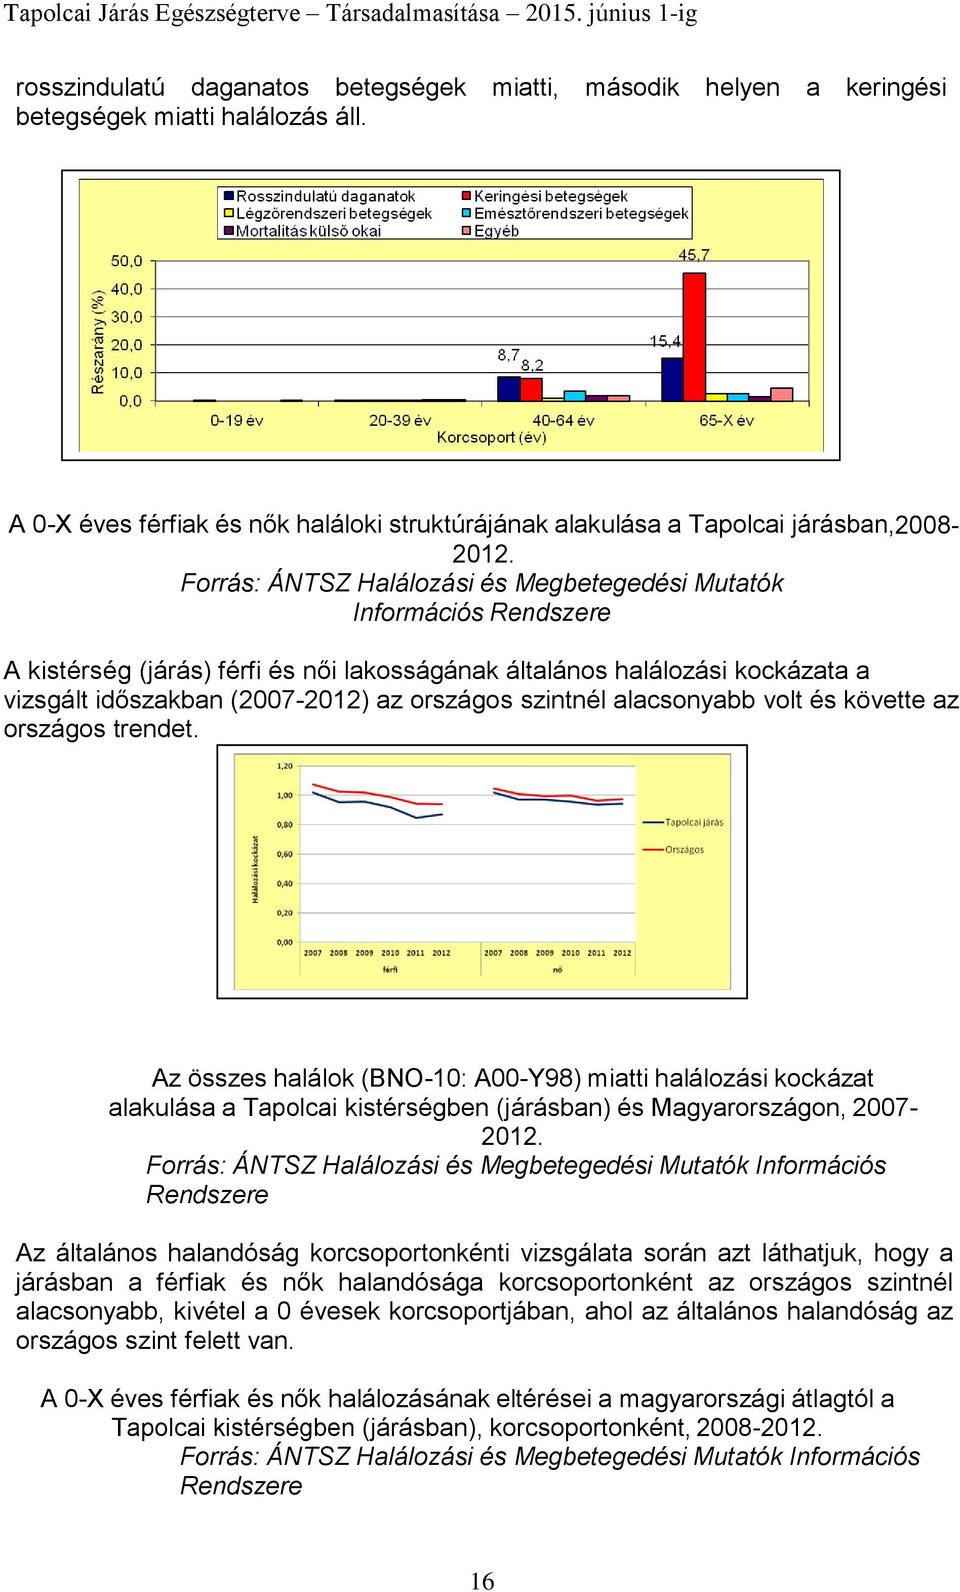 szintnél alacsonyabb volt és követte az országos trendet. Az összes halálok (BNO-10: A00-Y98) miatti halálozási kockázat alakulása a Tapolcai kistérségben (járásban) és Magyarországon, 2007-2012.